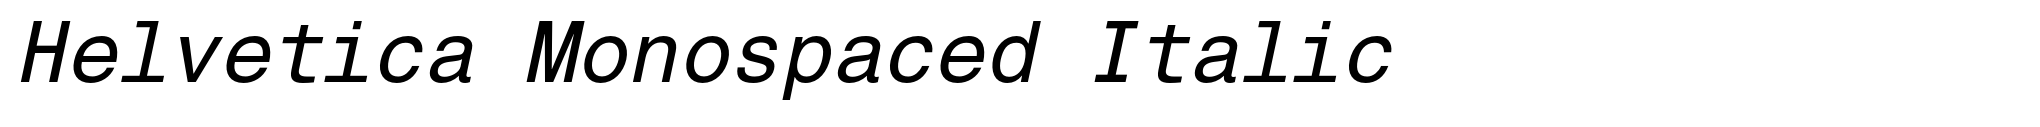 Helvetica Monospaced Italic image